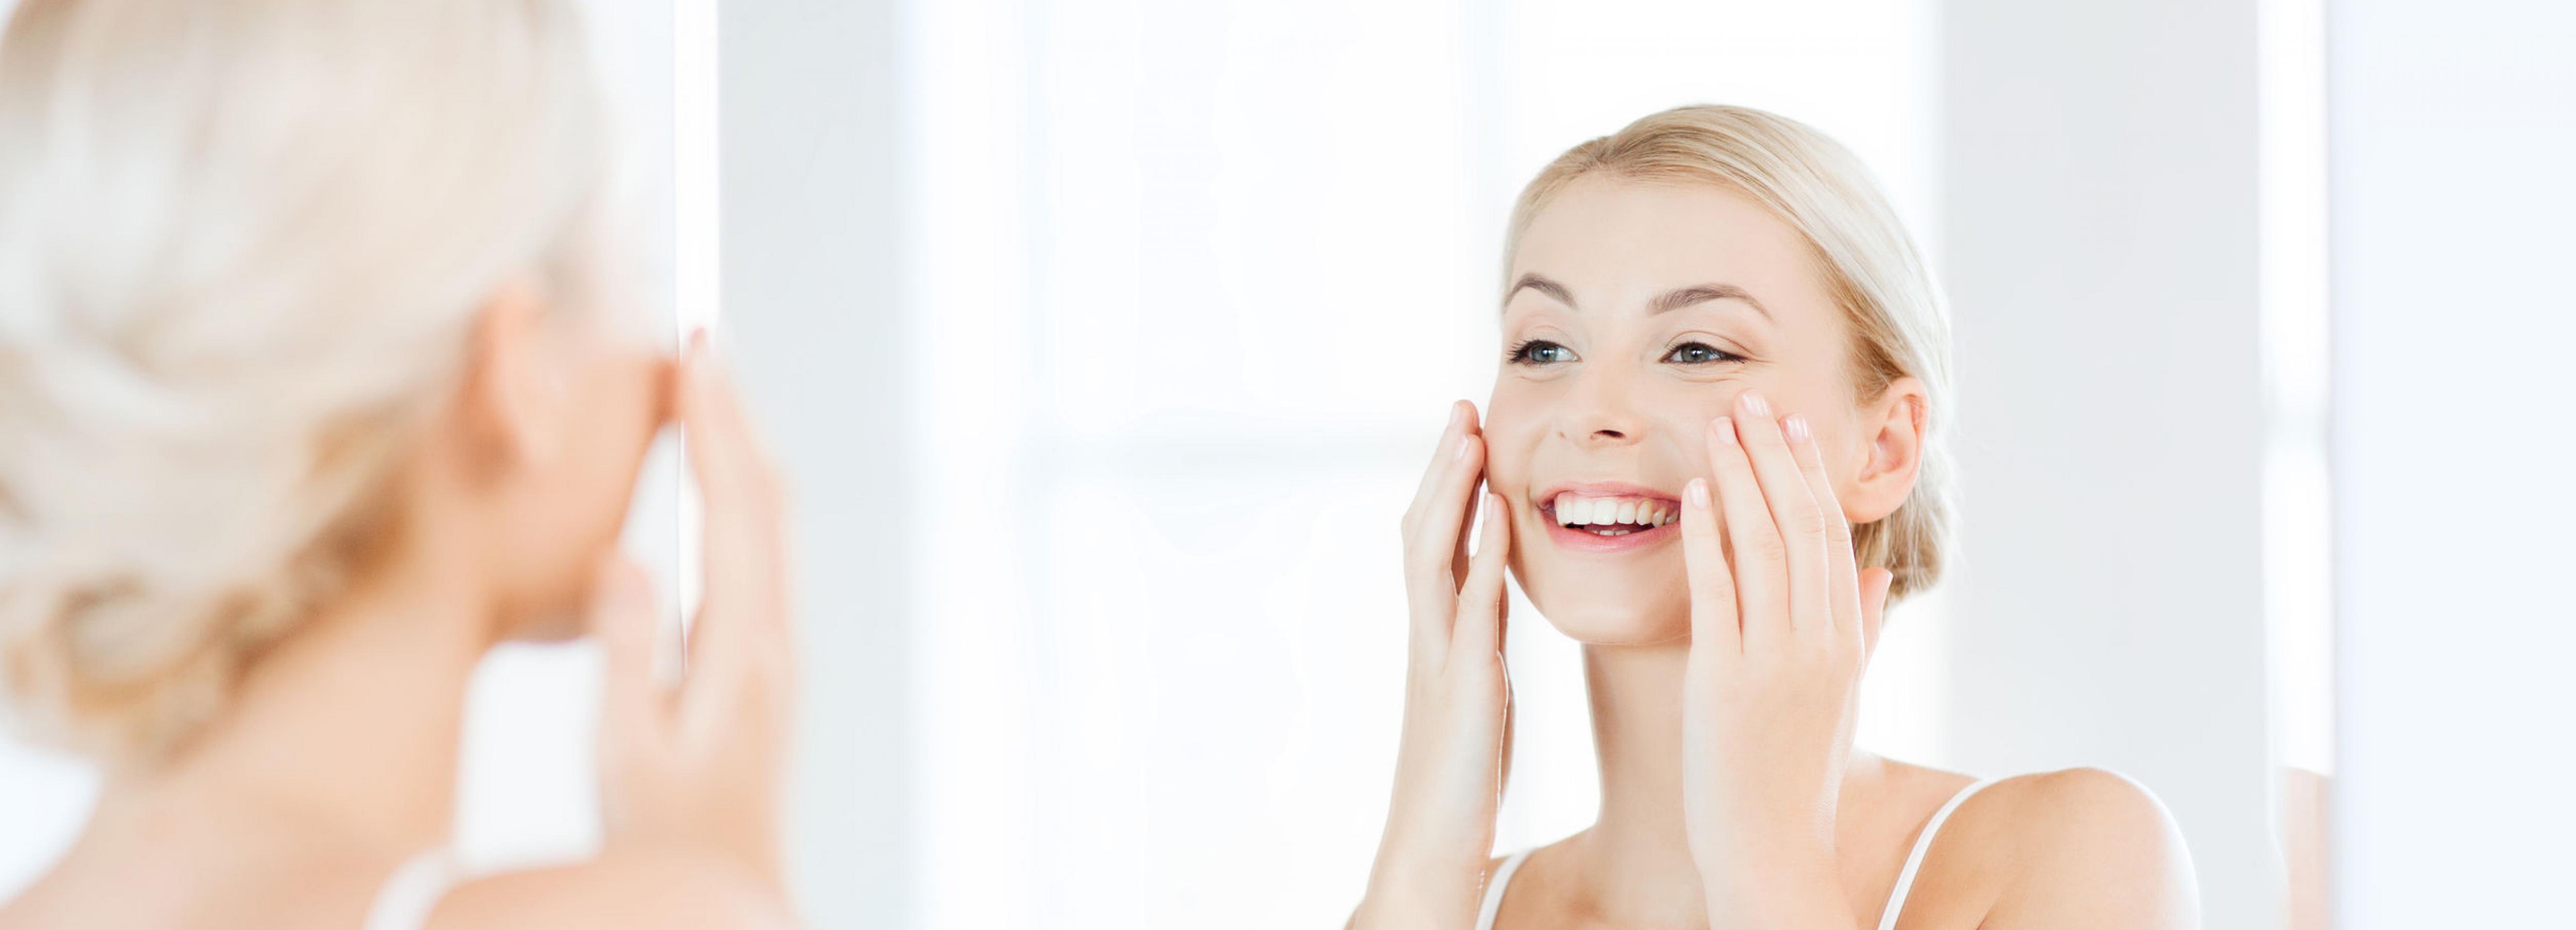 Как получить сияющую кожу лица в домашних условиях? | natali-fashion.ru